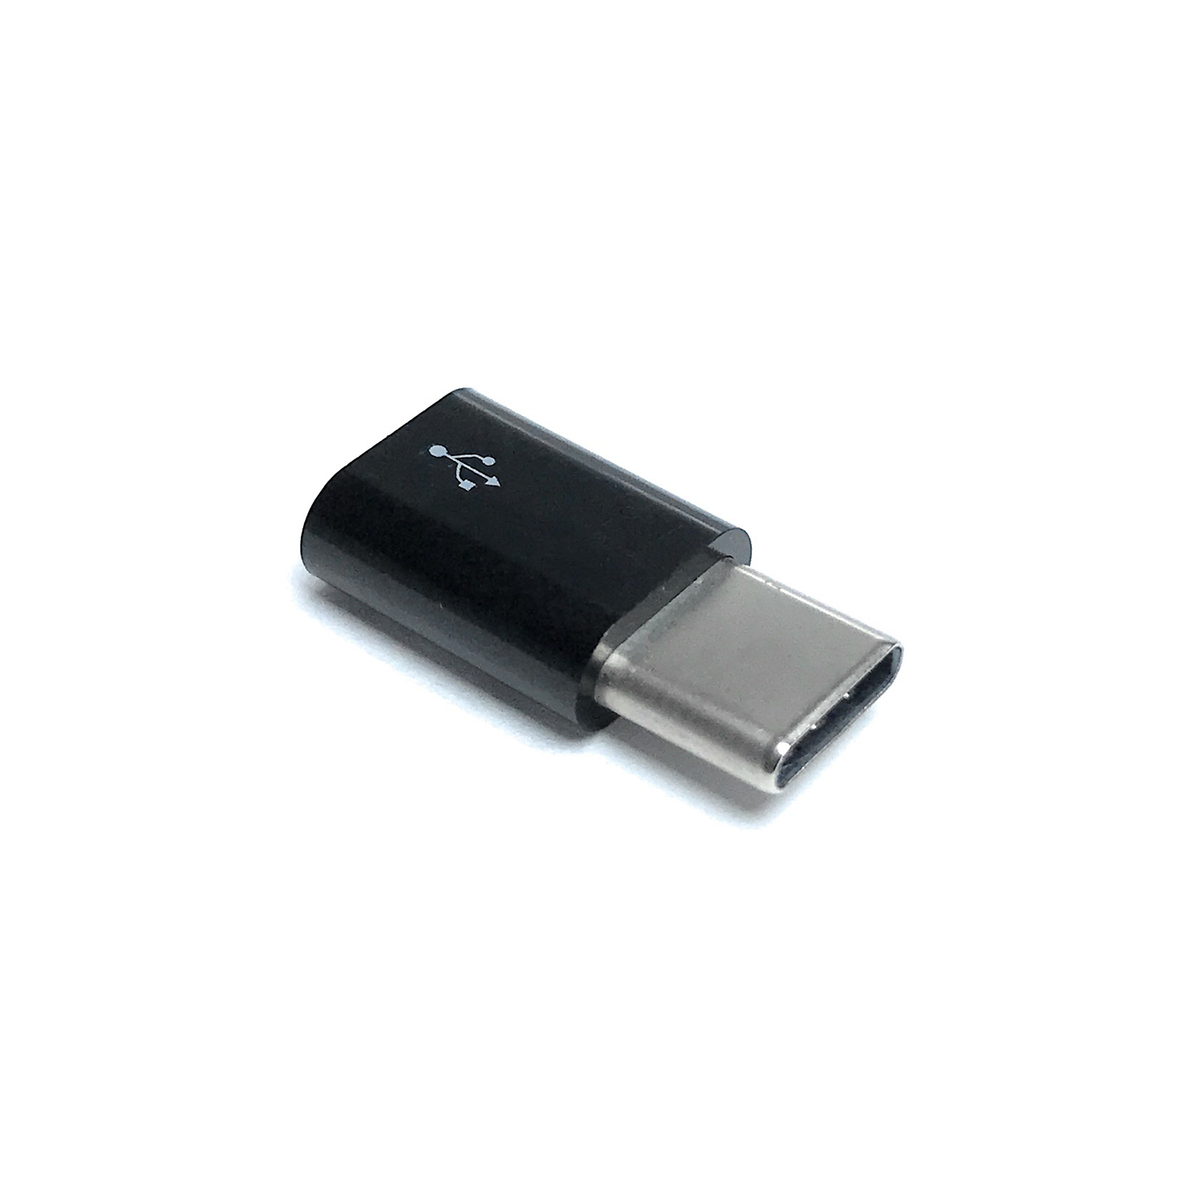 Adaptador micro USB a USB-C — 330ohms